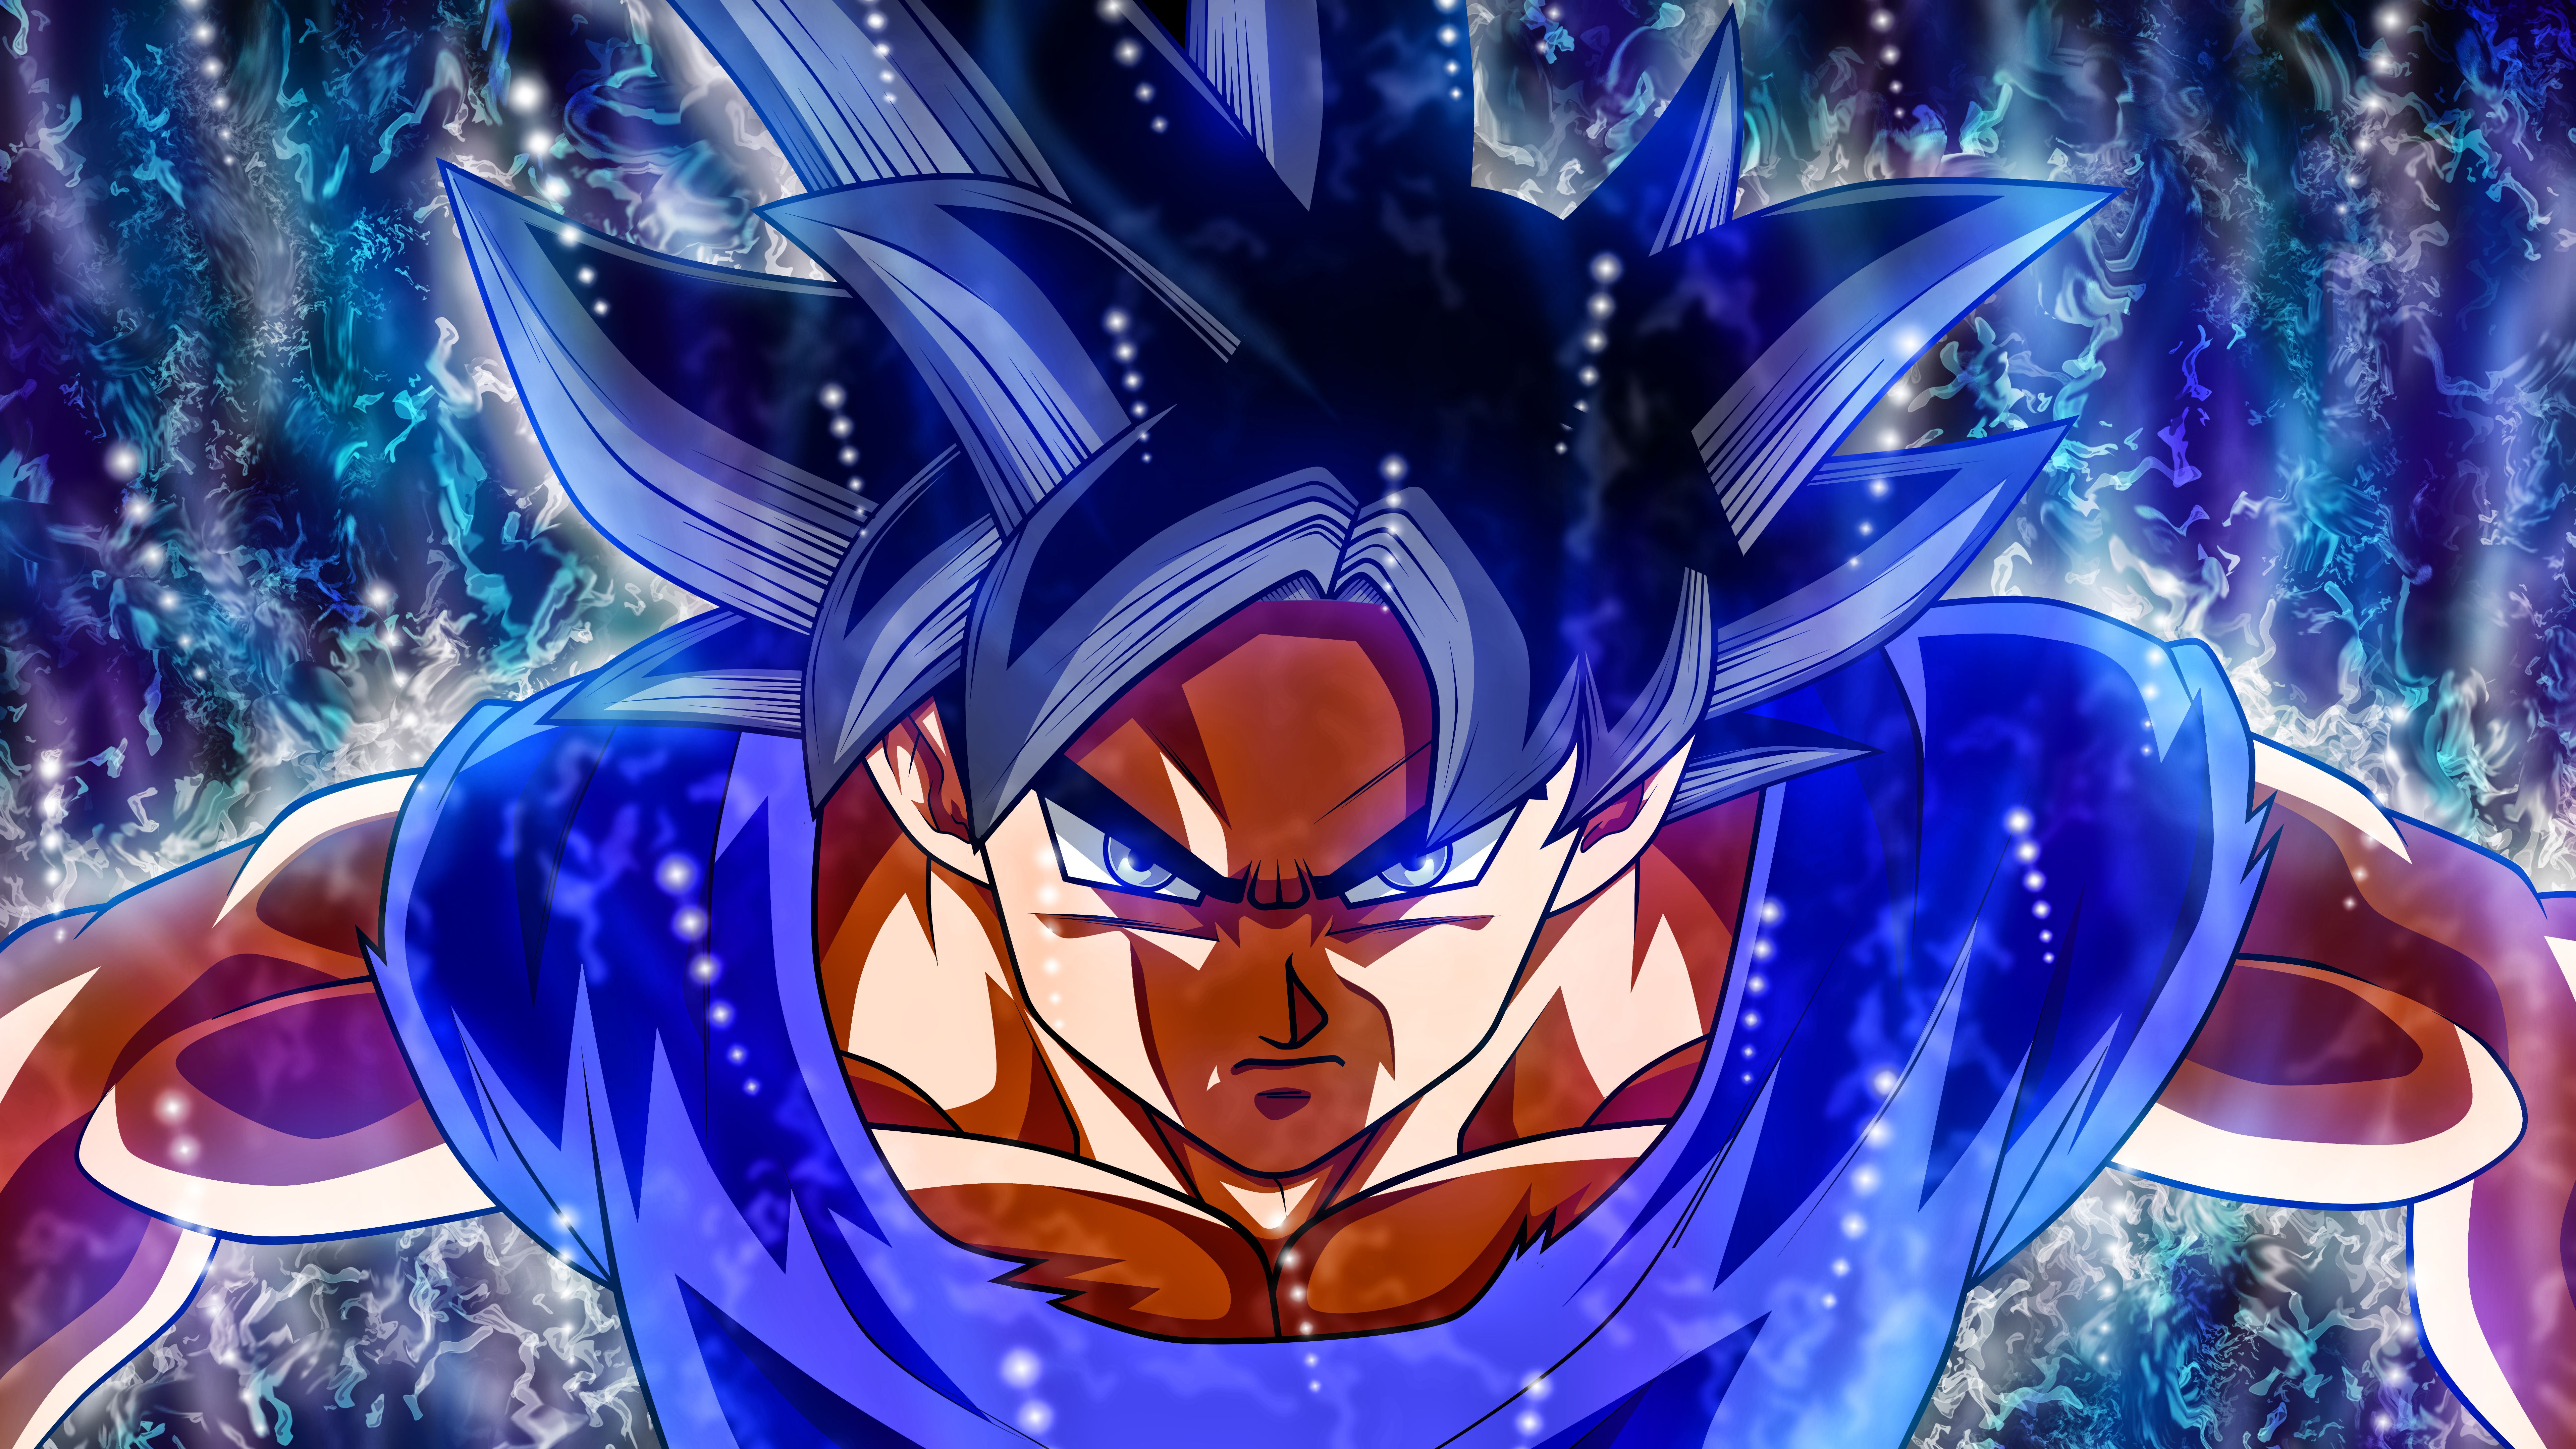 Dragon Ball Z | Goku 8K wallpaper download